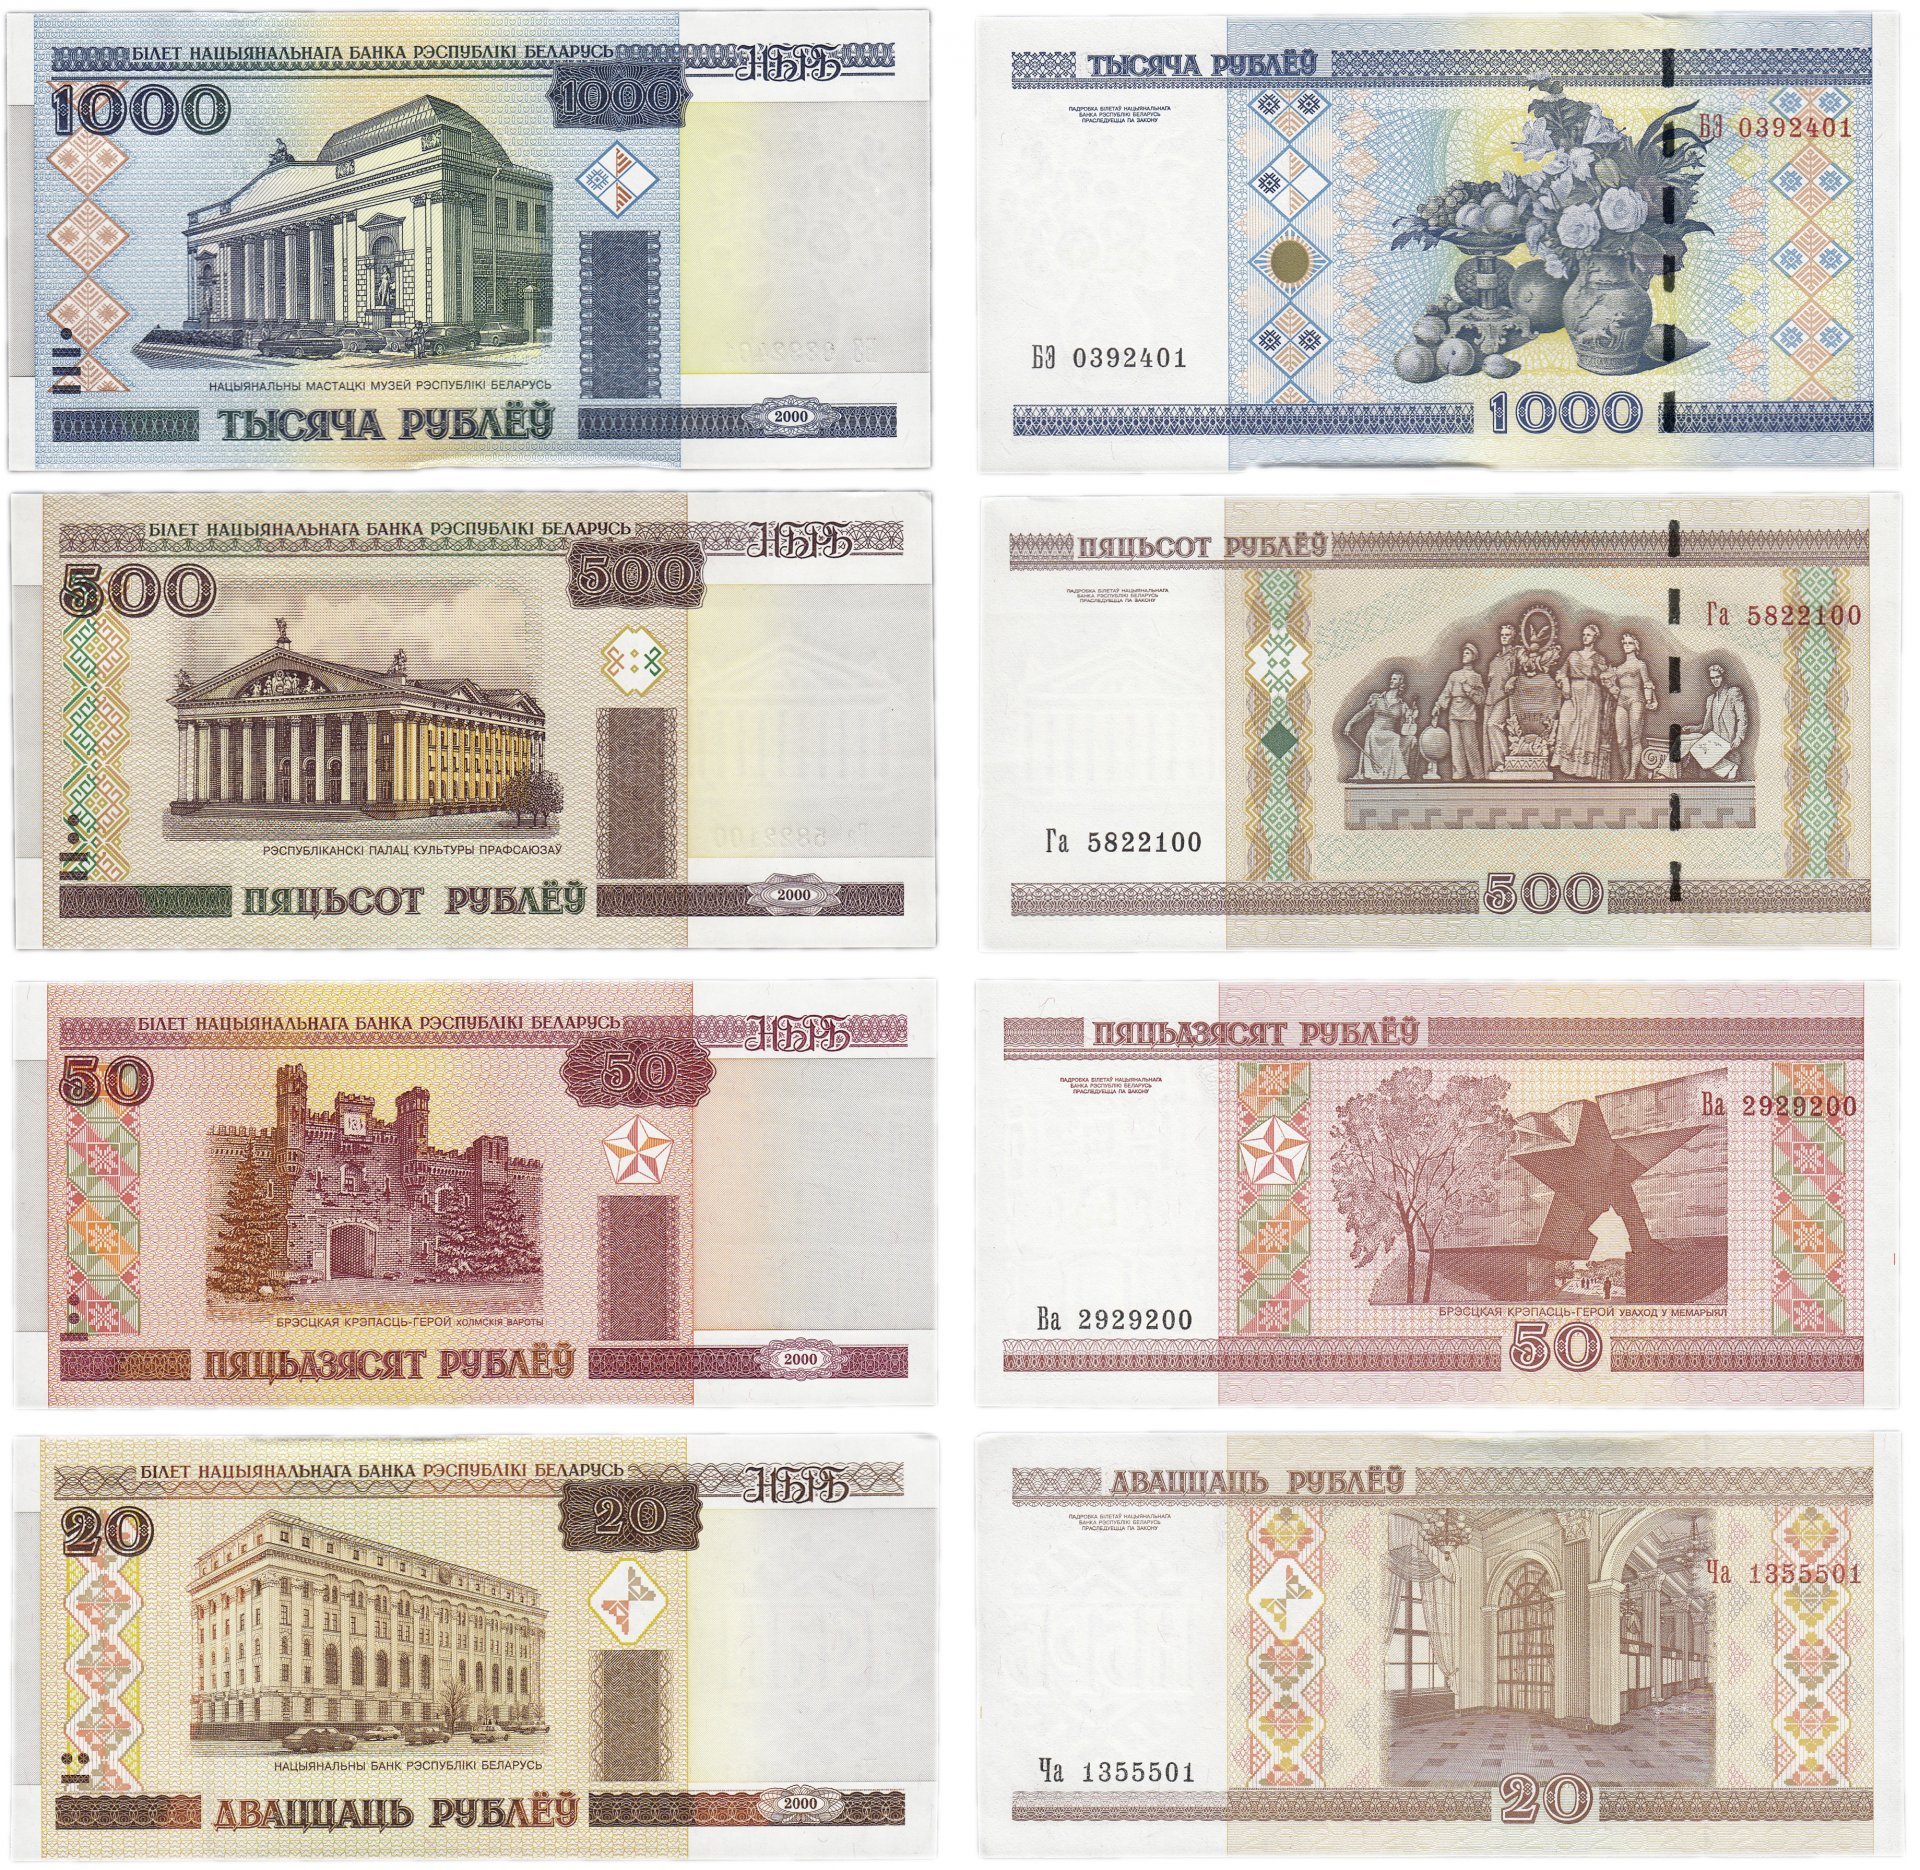 Купюры Белоруссии 2000 года. Набор банкнот 2000 года Беларусь. Где выгоднее купить белорусские рубли